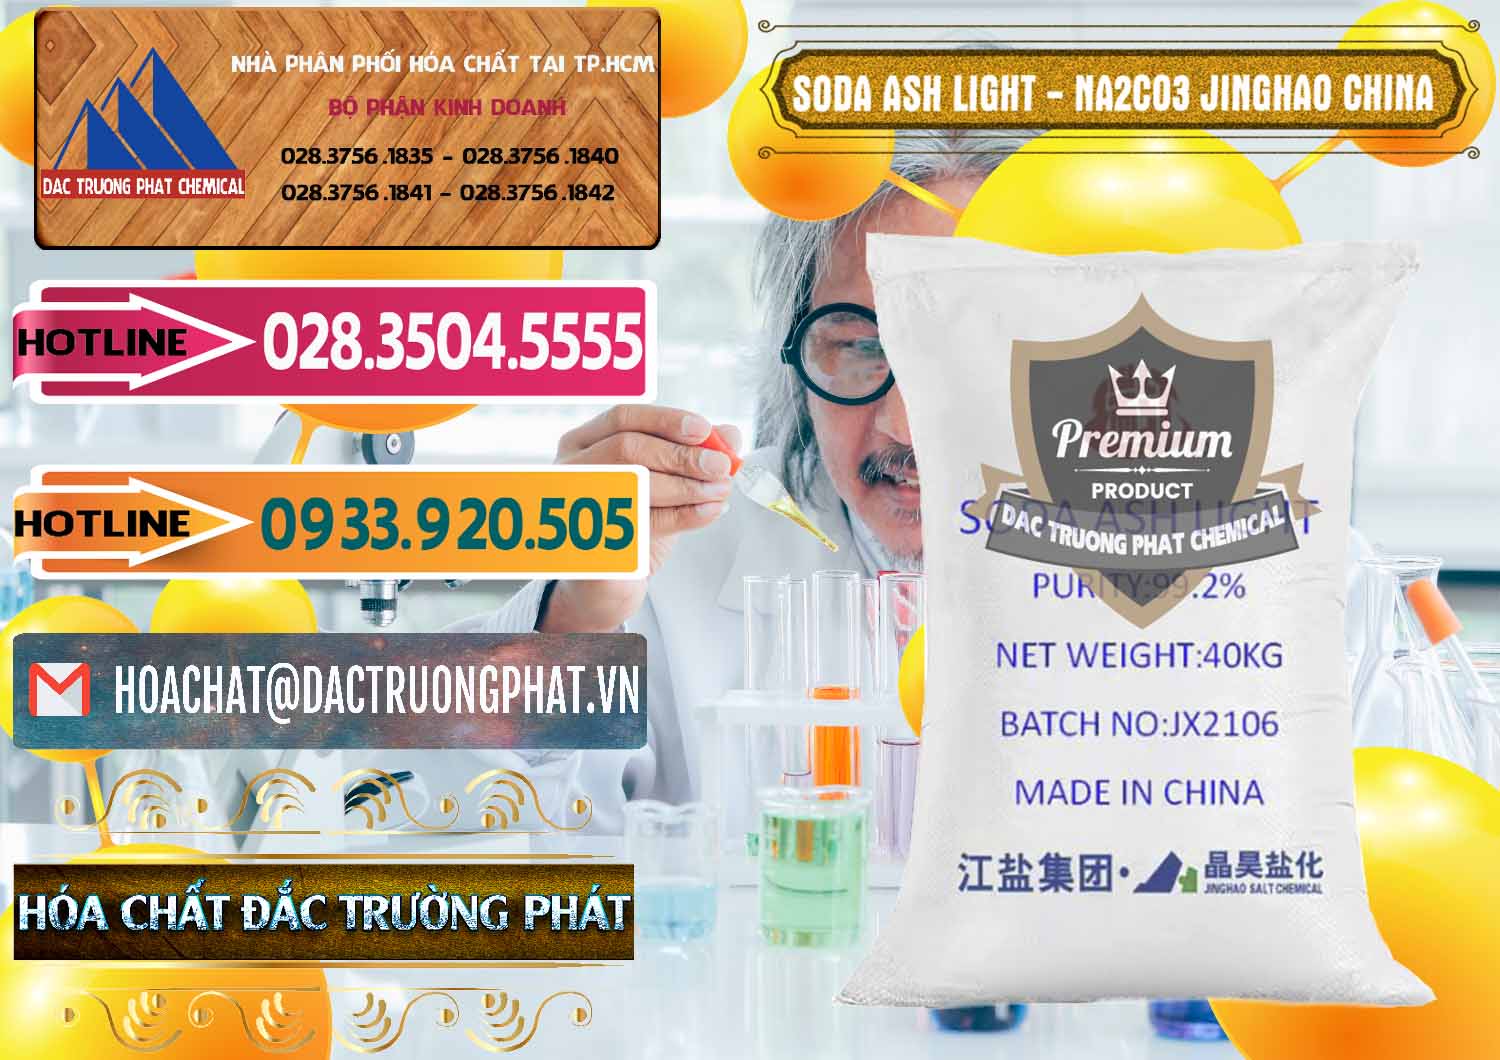 Cty chuyên phân phối & bán Soda Ash Light - NA2CO3 Jinghao Trung Quốc China - 0339 - Công ty chuyên bán & cung cấp hóa chất tại TP.HCM - dactruongphat.vn